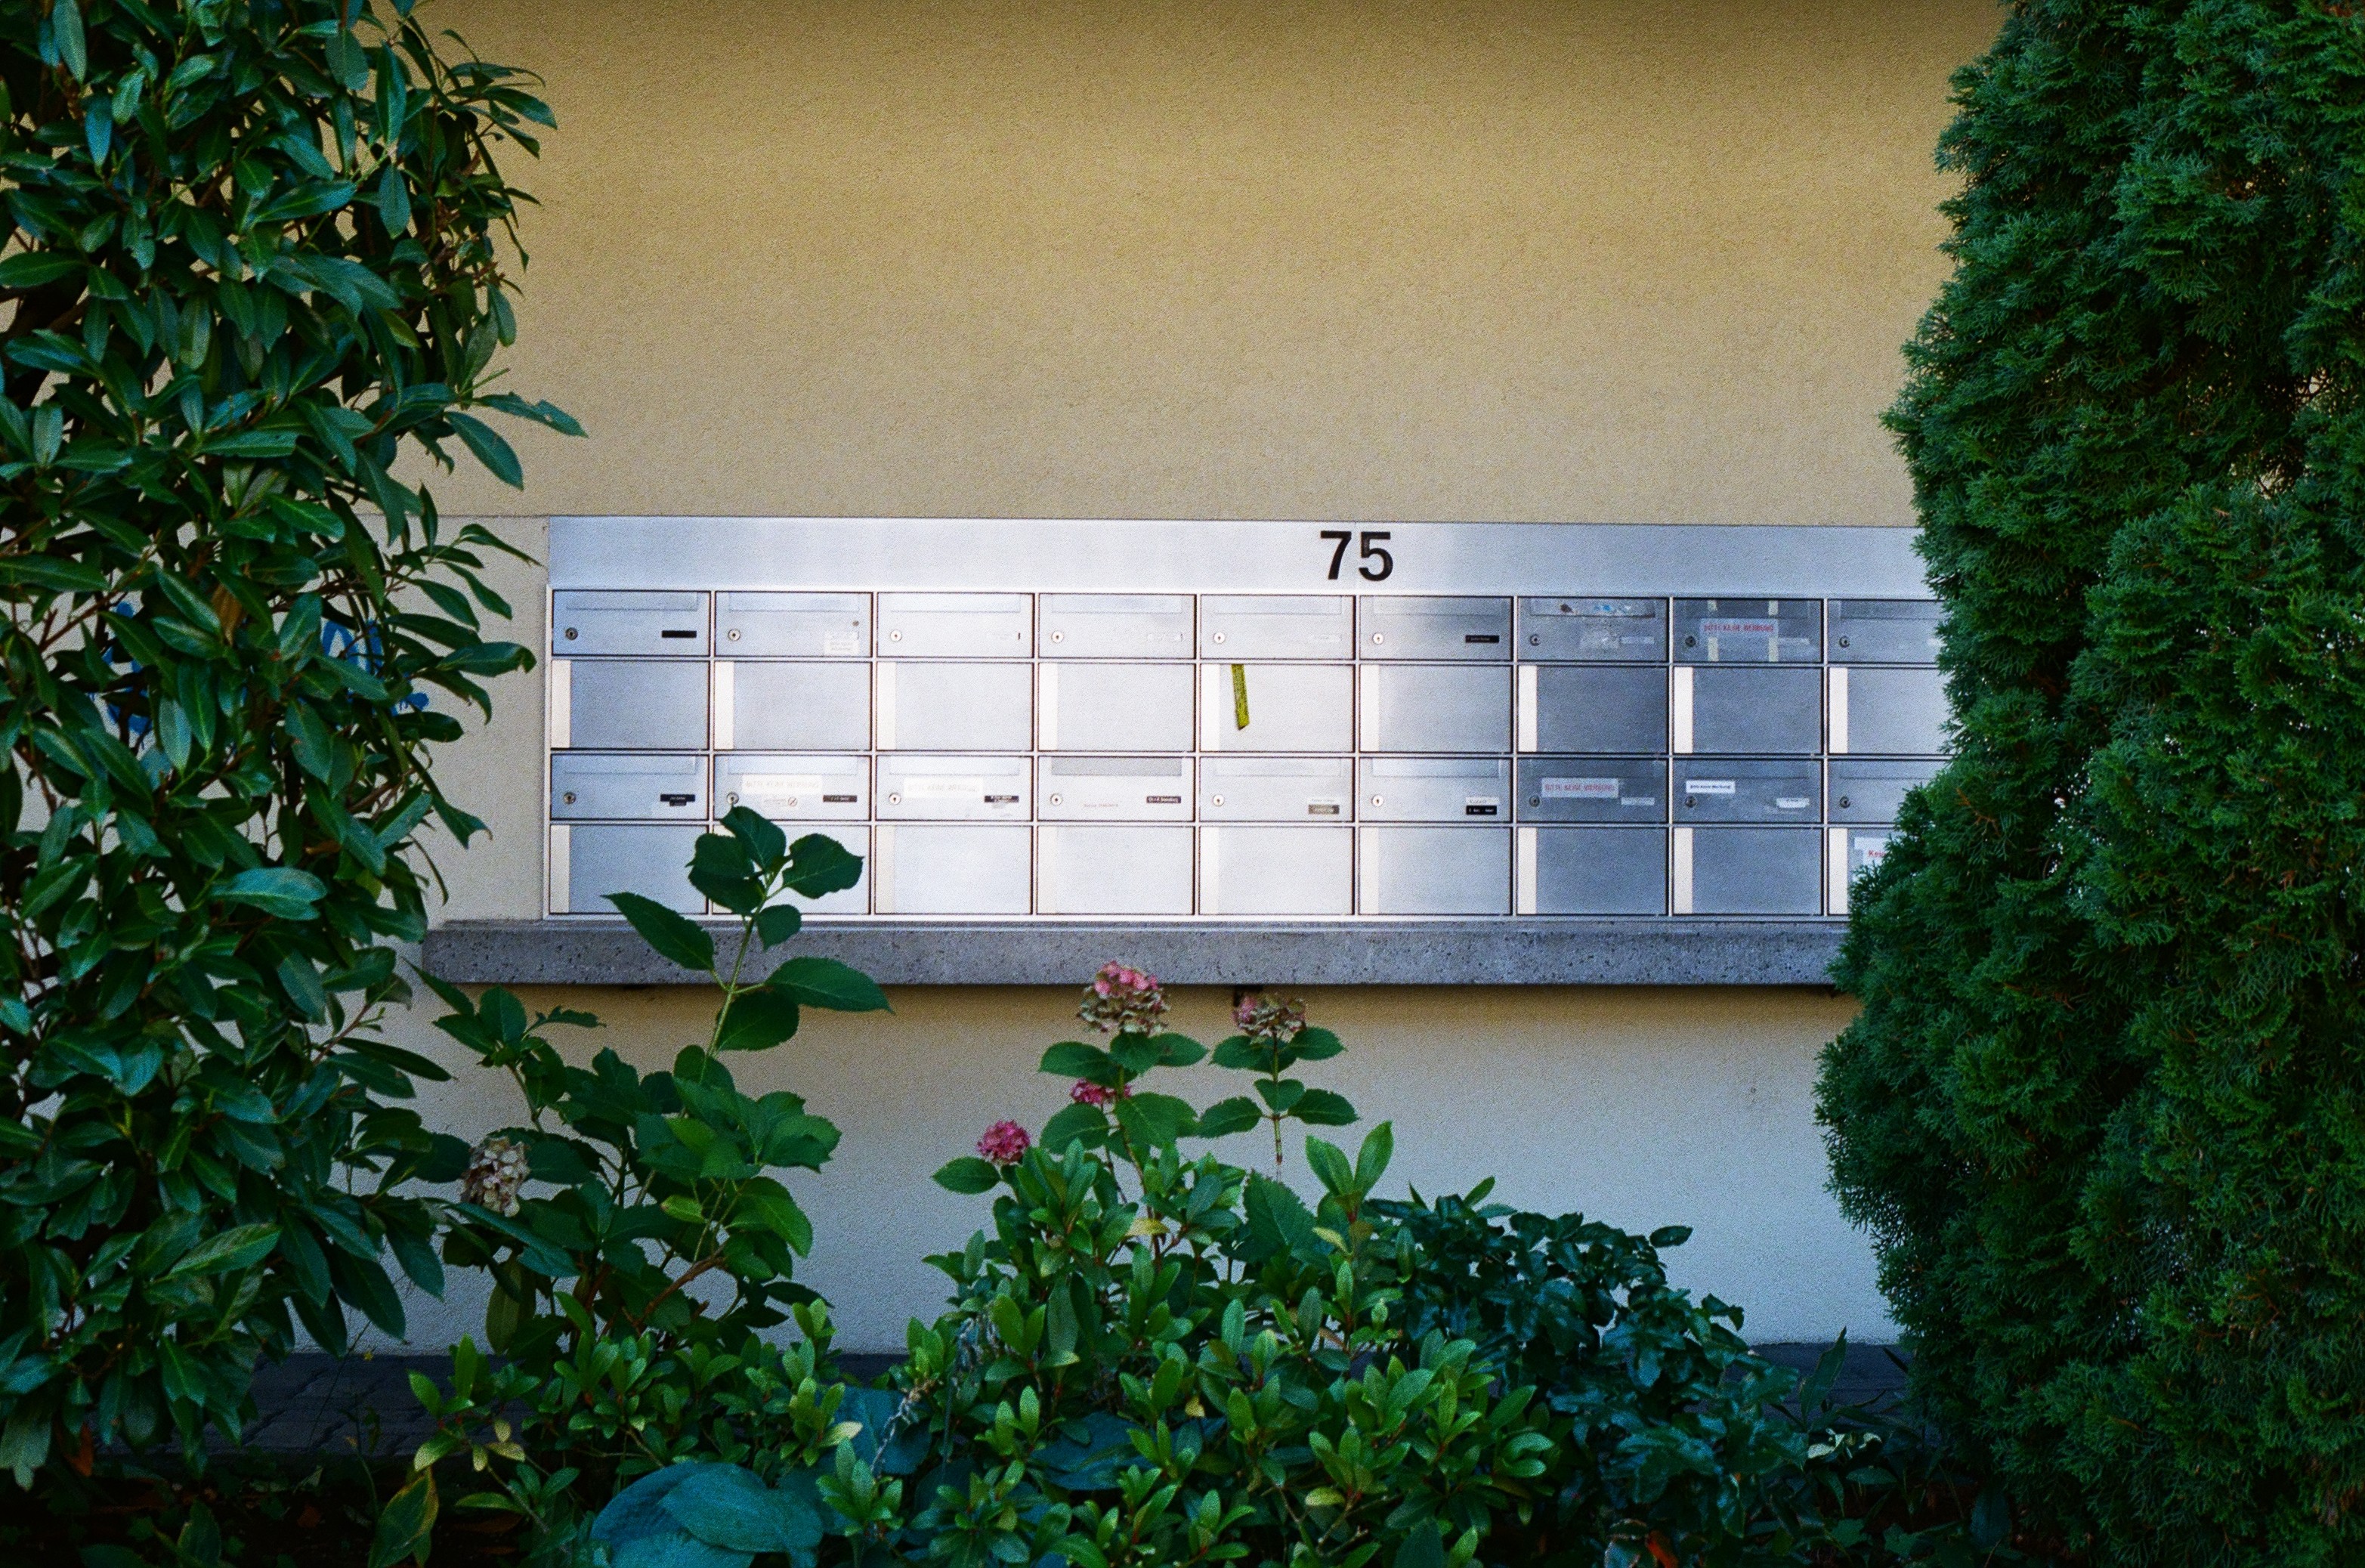 Viele Briefkasten an einer Hauswand, umgeben von Grünpflanzen. © Nathalie Jufer